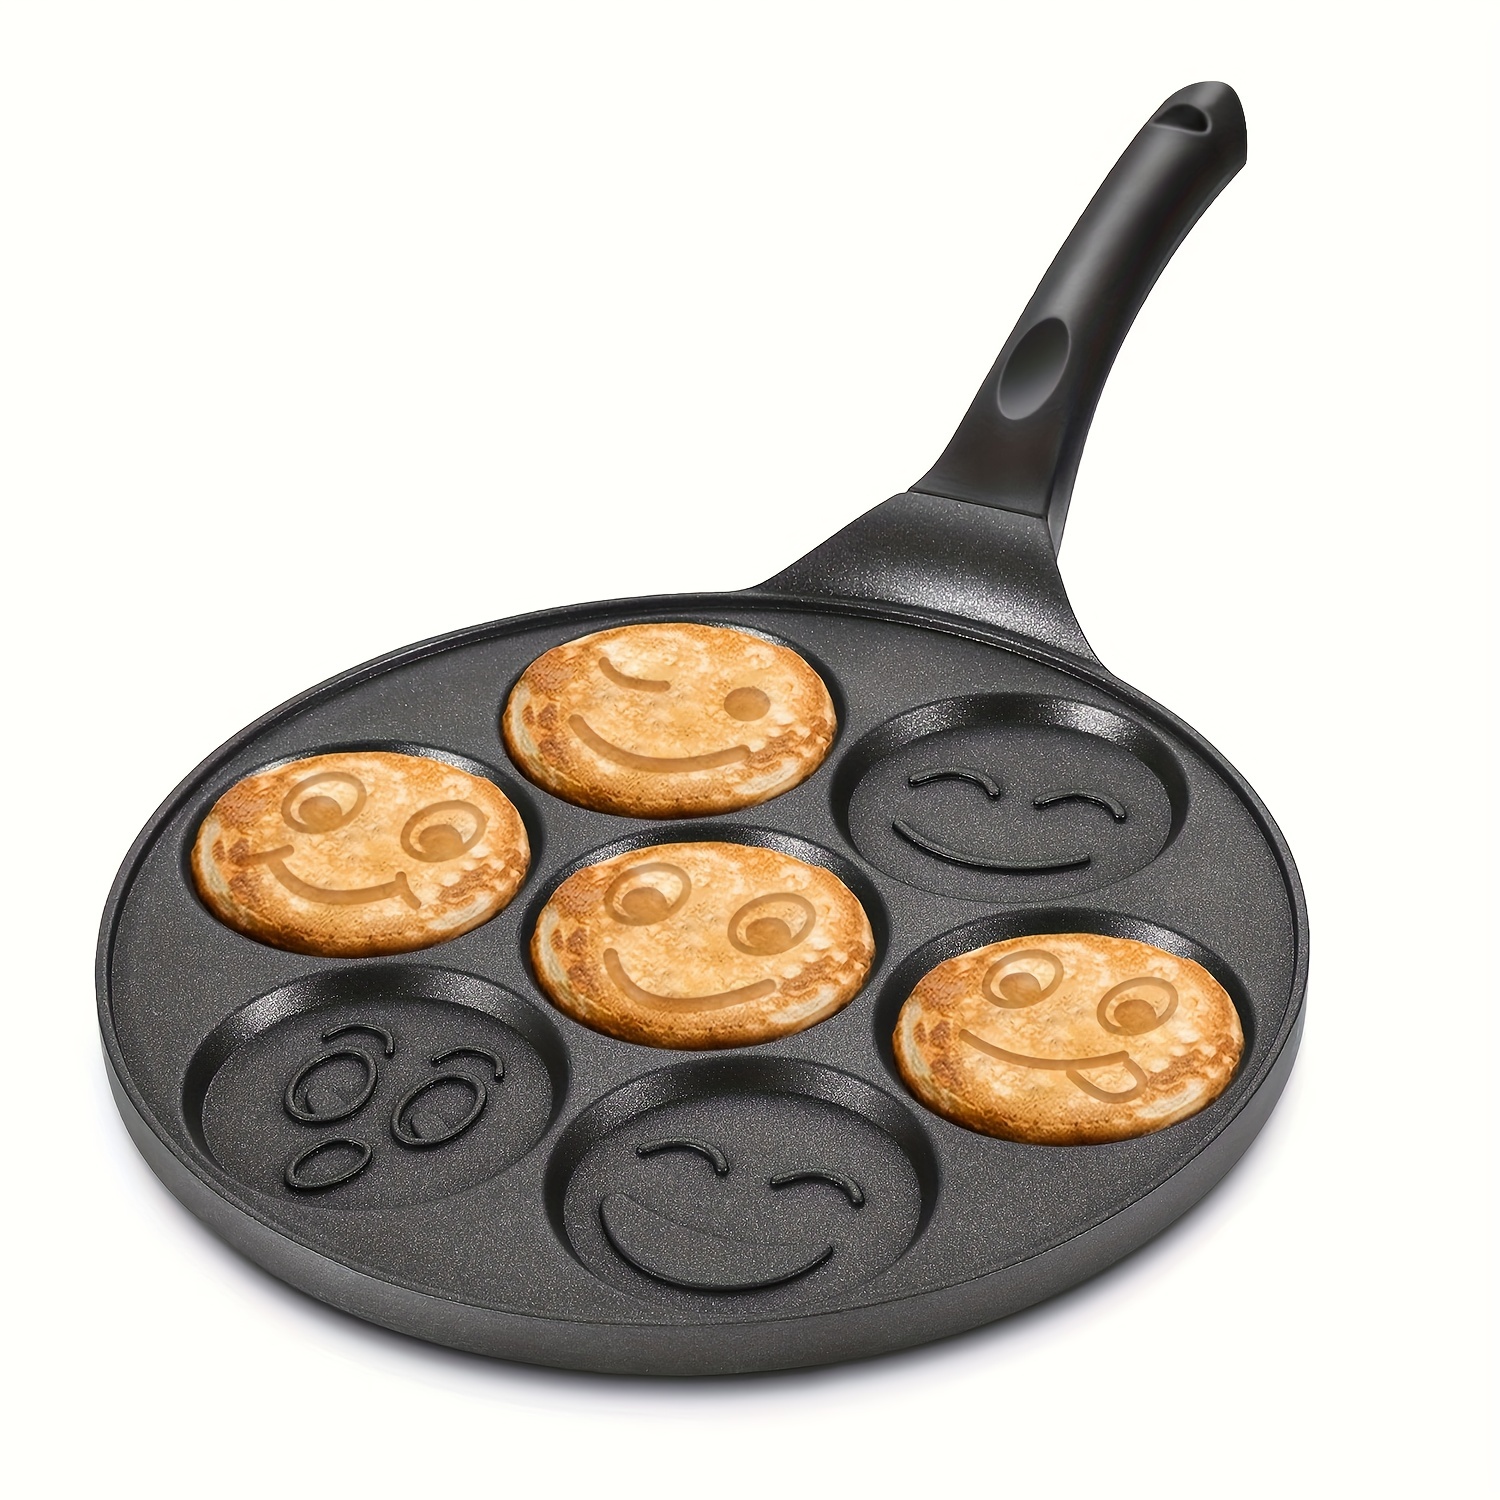 Pancake Molds for Kids, Pancake Pan, Pancake Mold, Mini Pancakes Maker